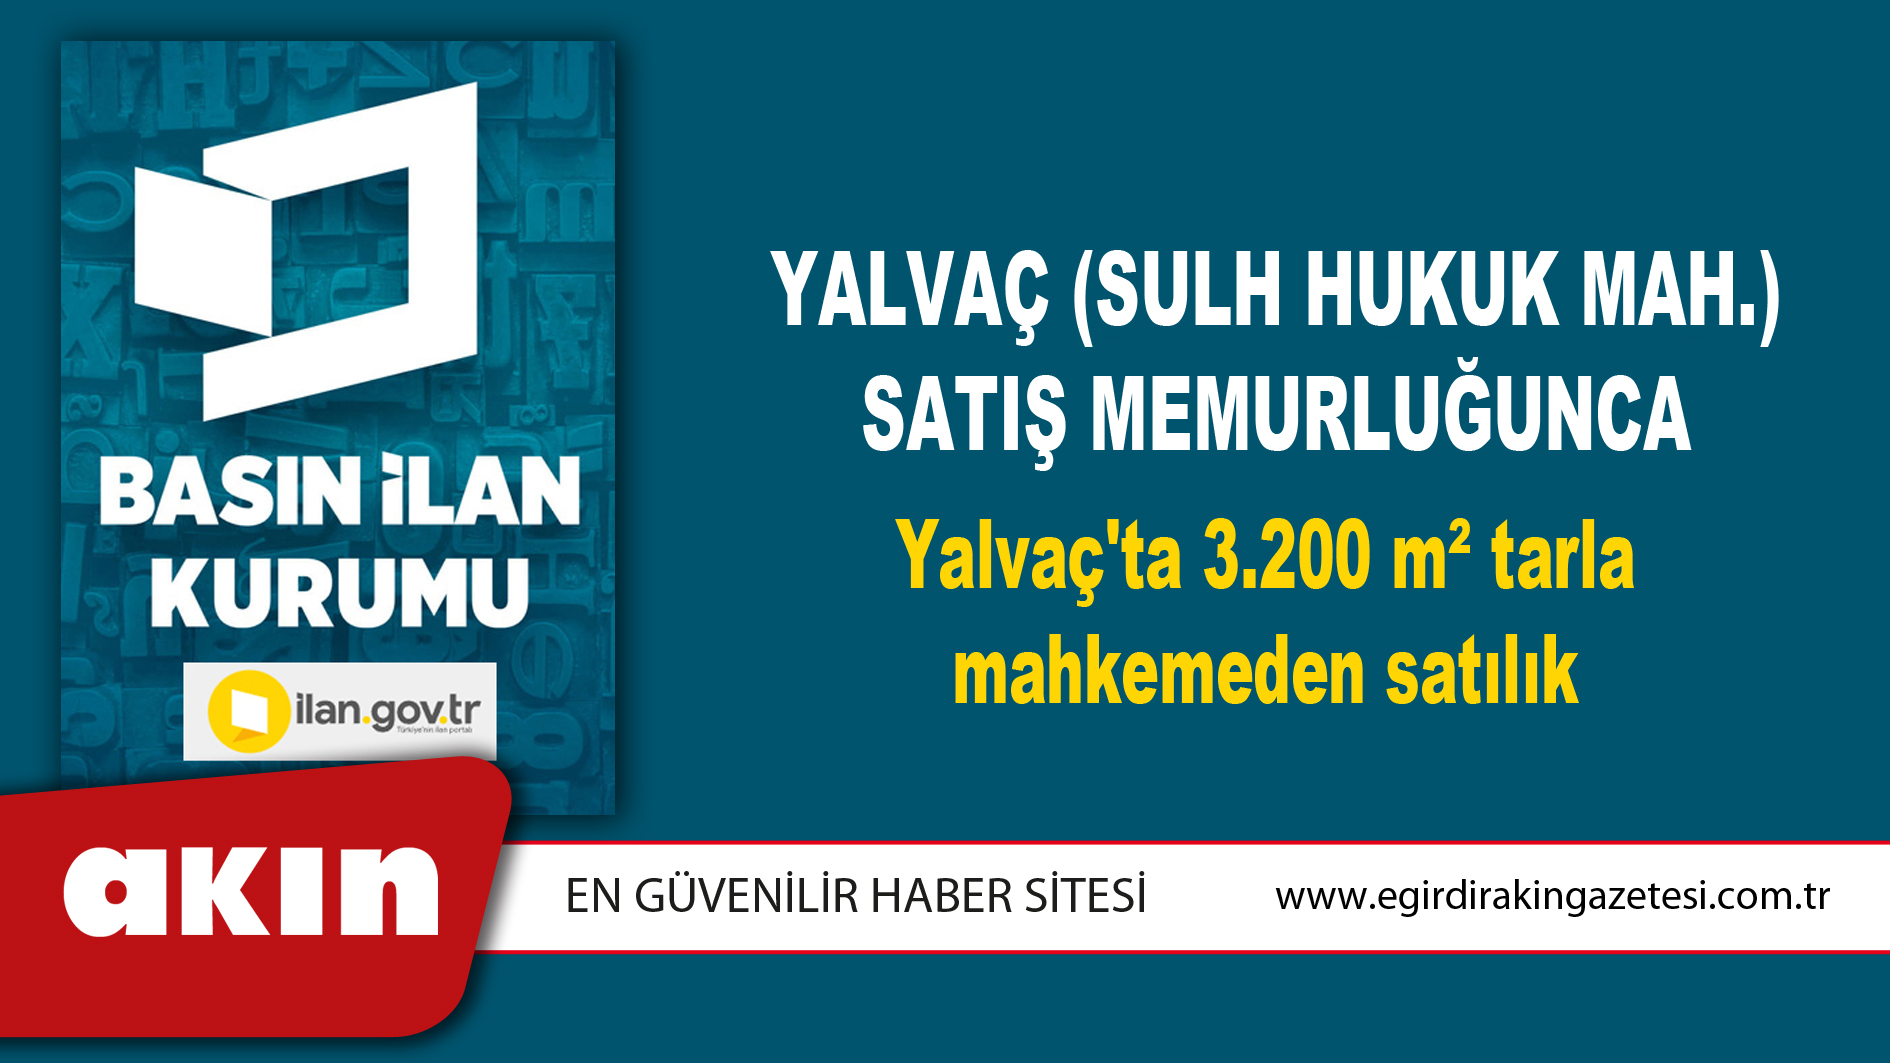 Yalvaç (Sulh Hukuk Mah.) Satış Memurluğunca Yalvaç'ta 3.200 m² tarla mahkemeden satılık